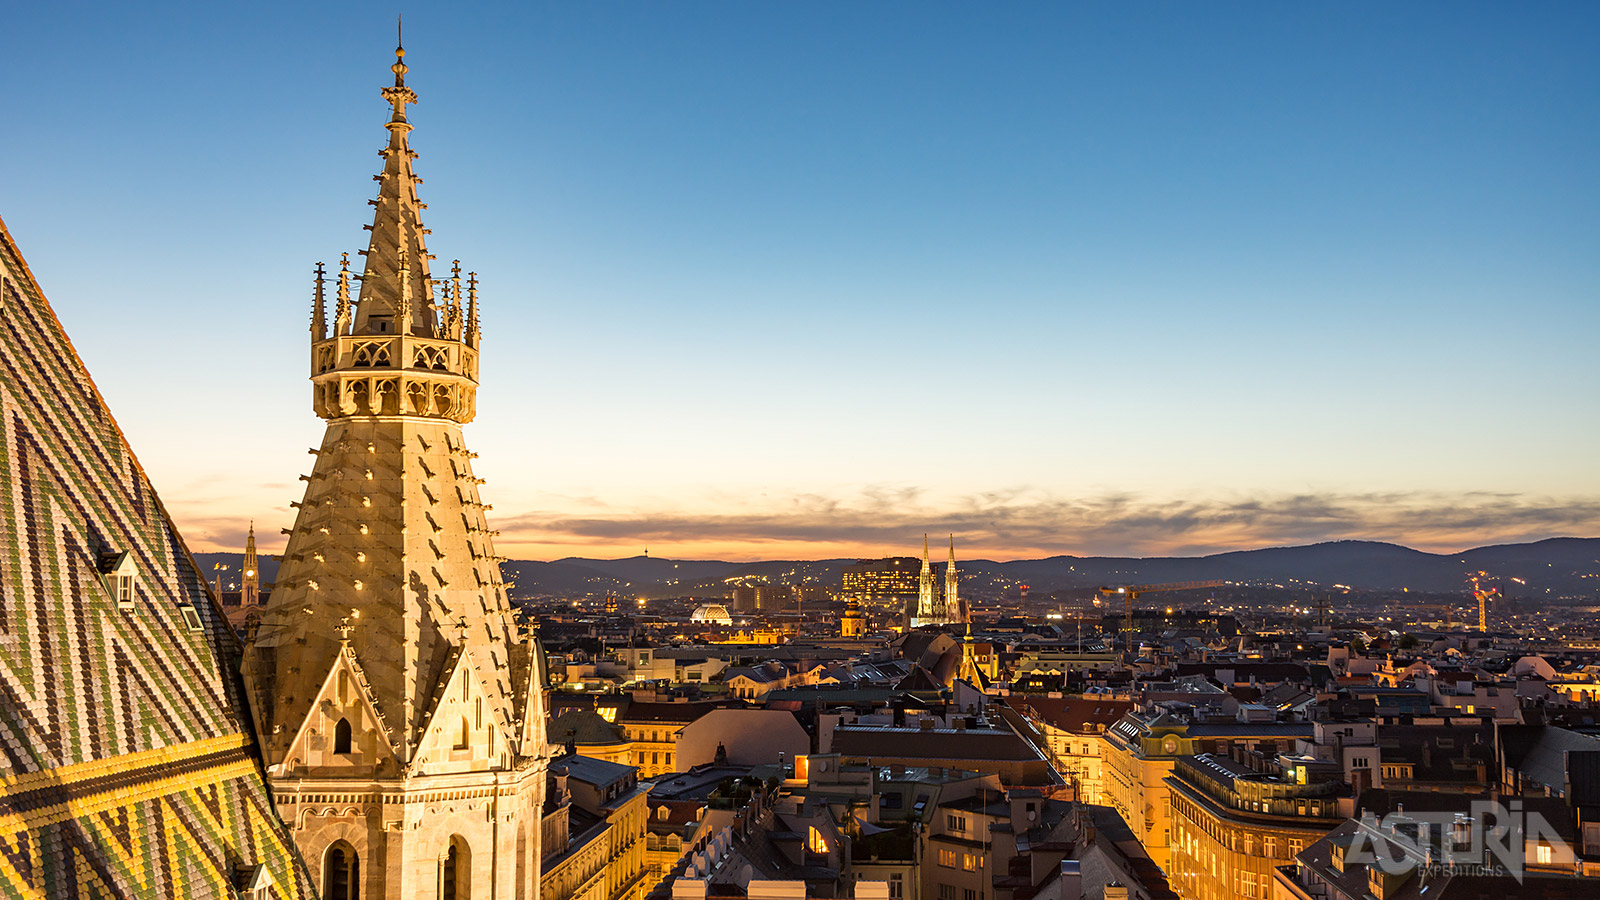 De iconische Stephansdom is de trots van elke Wener, een opvallend gotisch bouwwerk met monumentale zuidertoren